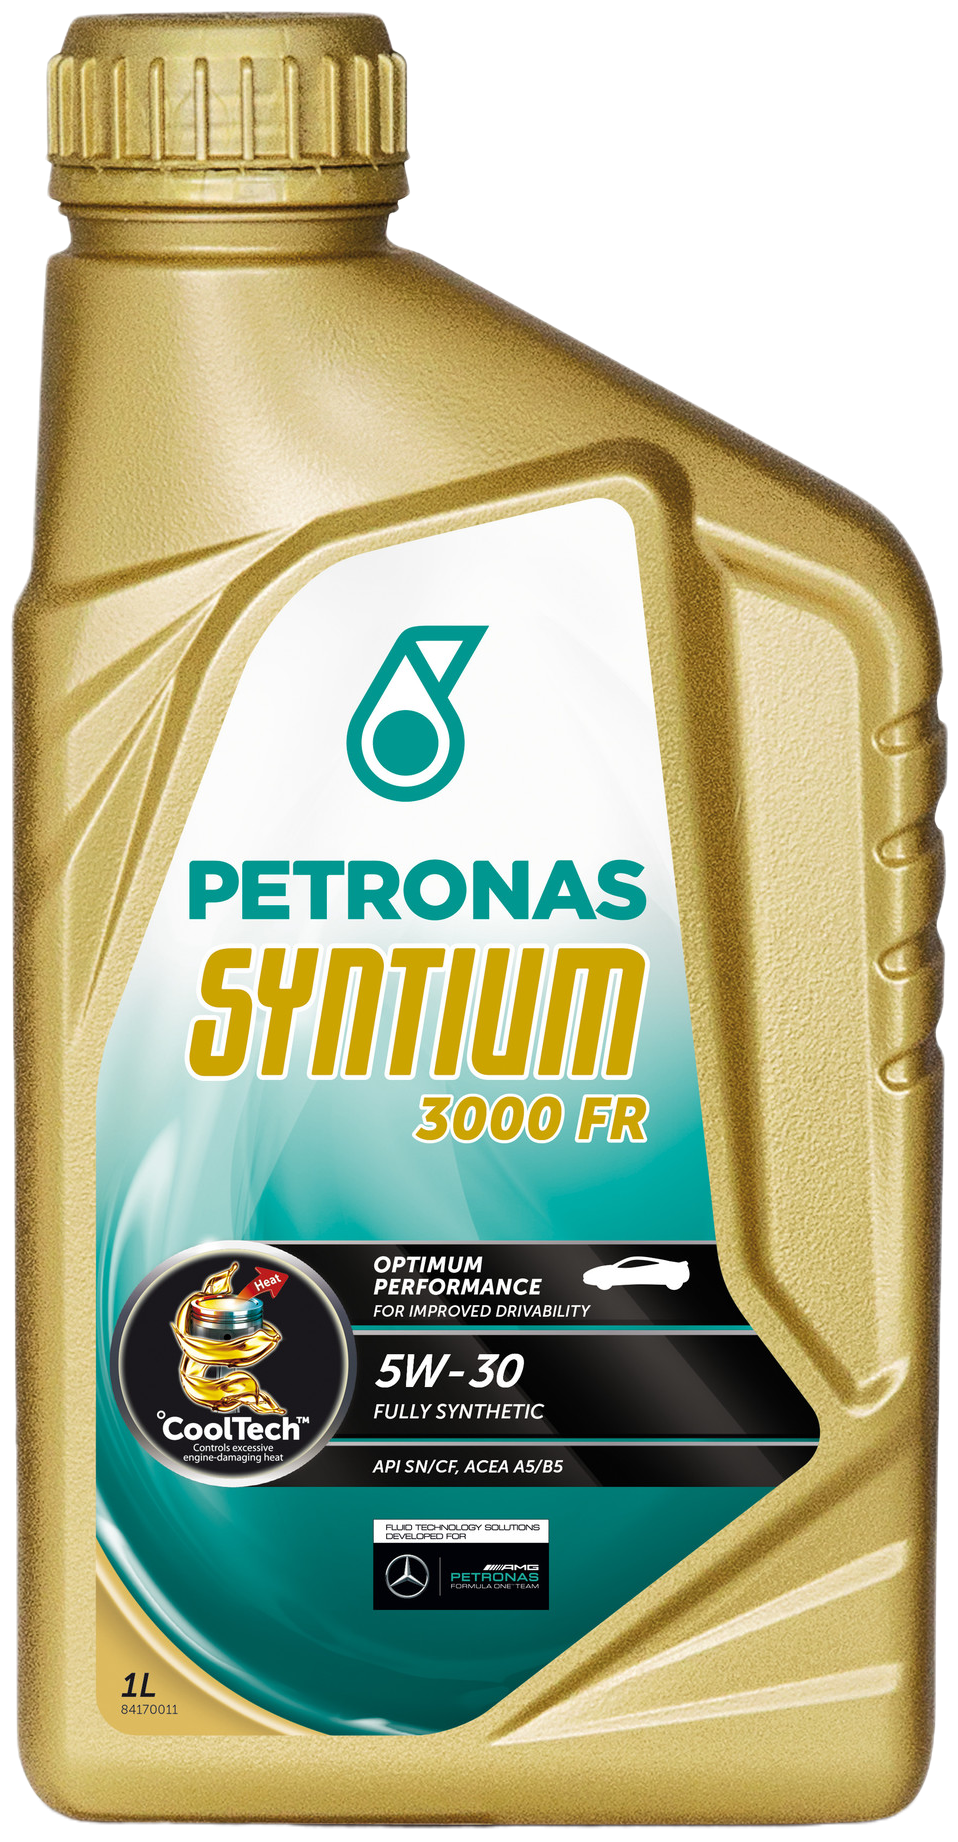 Petronas Syntium 3000 FR 5W-30, 1 lt